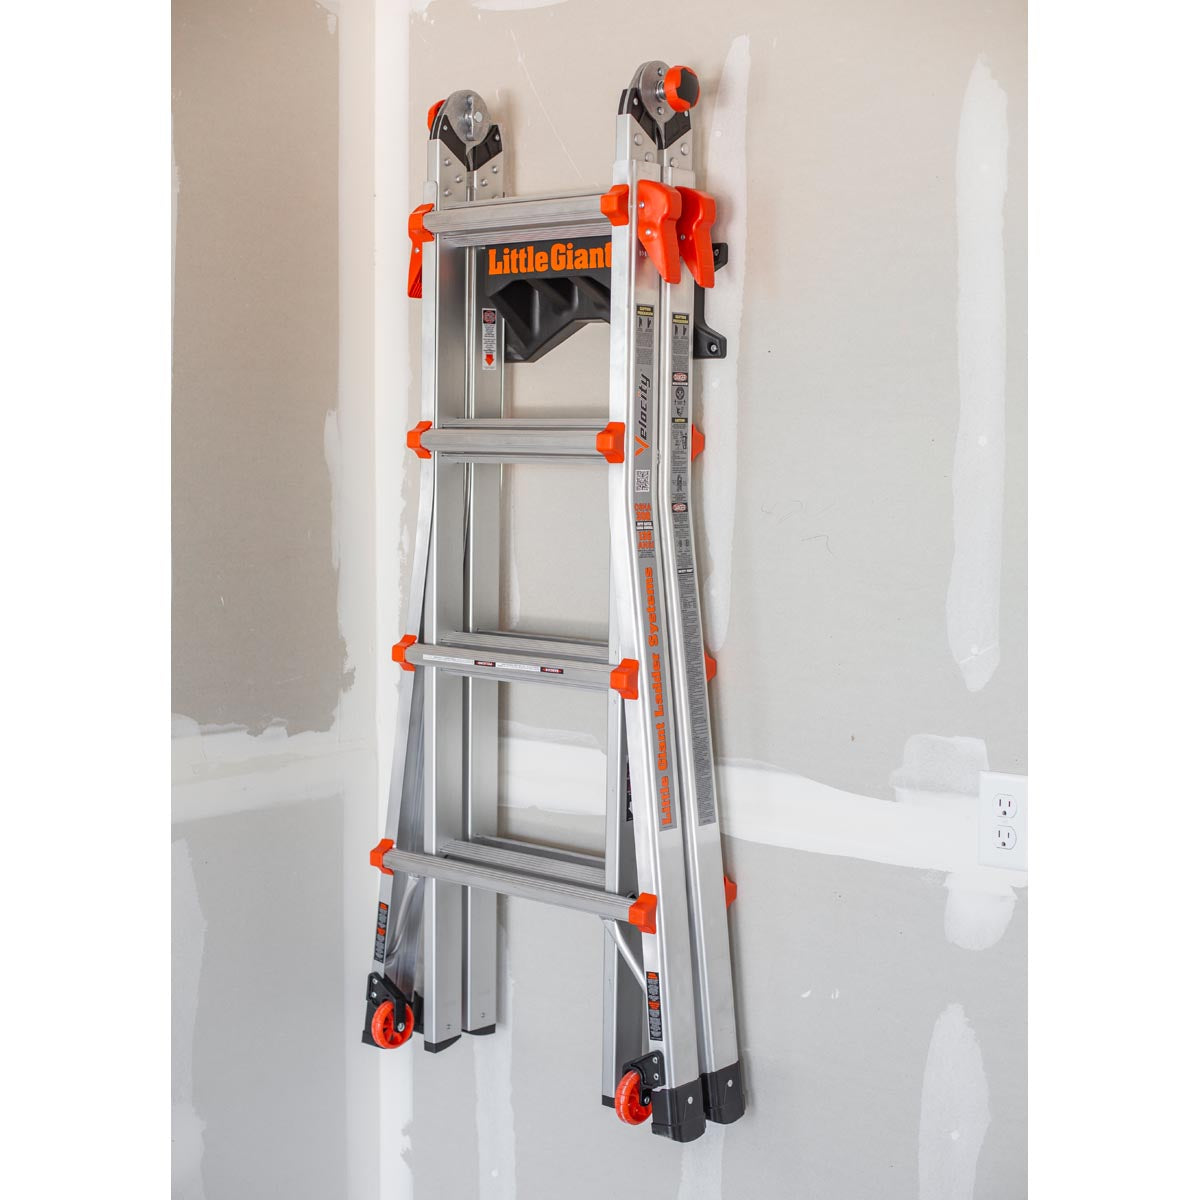 Little Giant Ladder Rack Ladder Rack Accessory